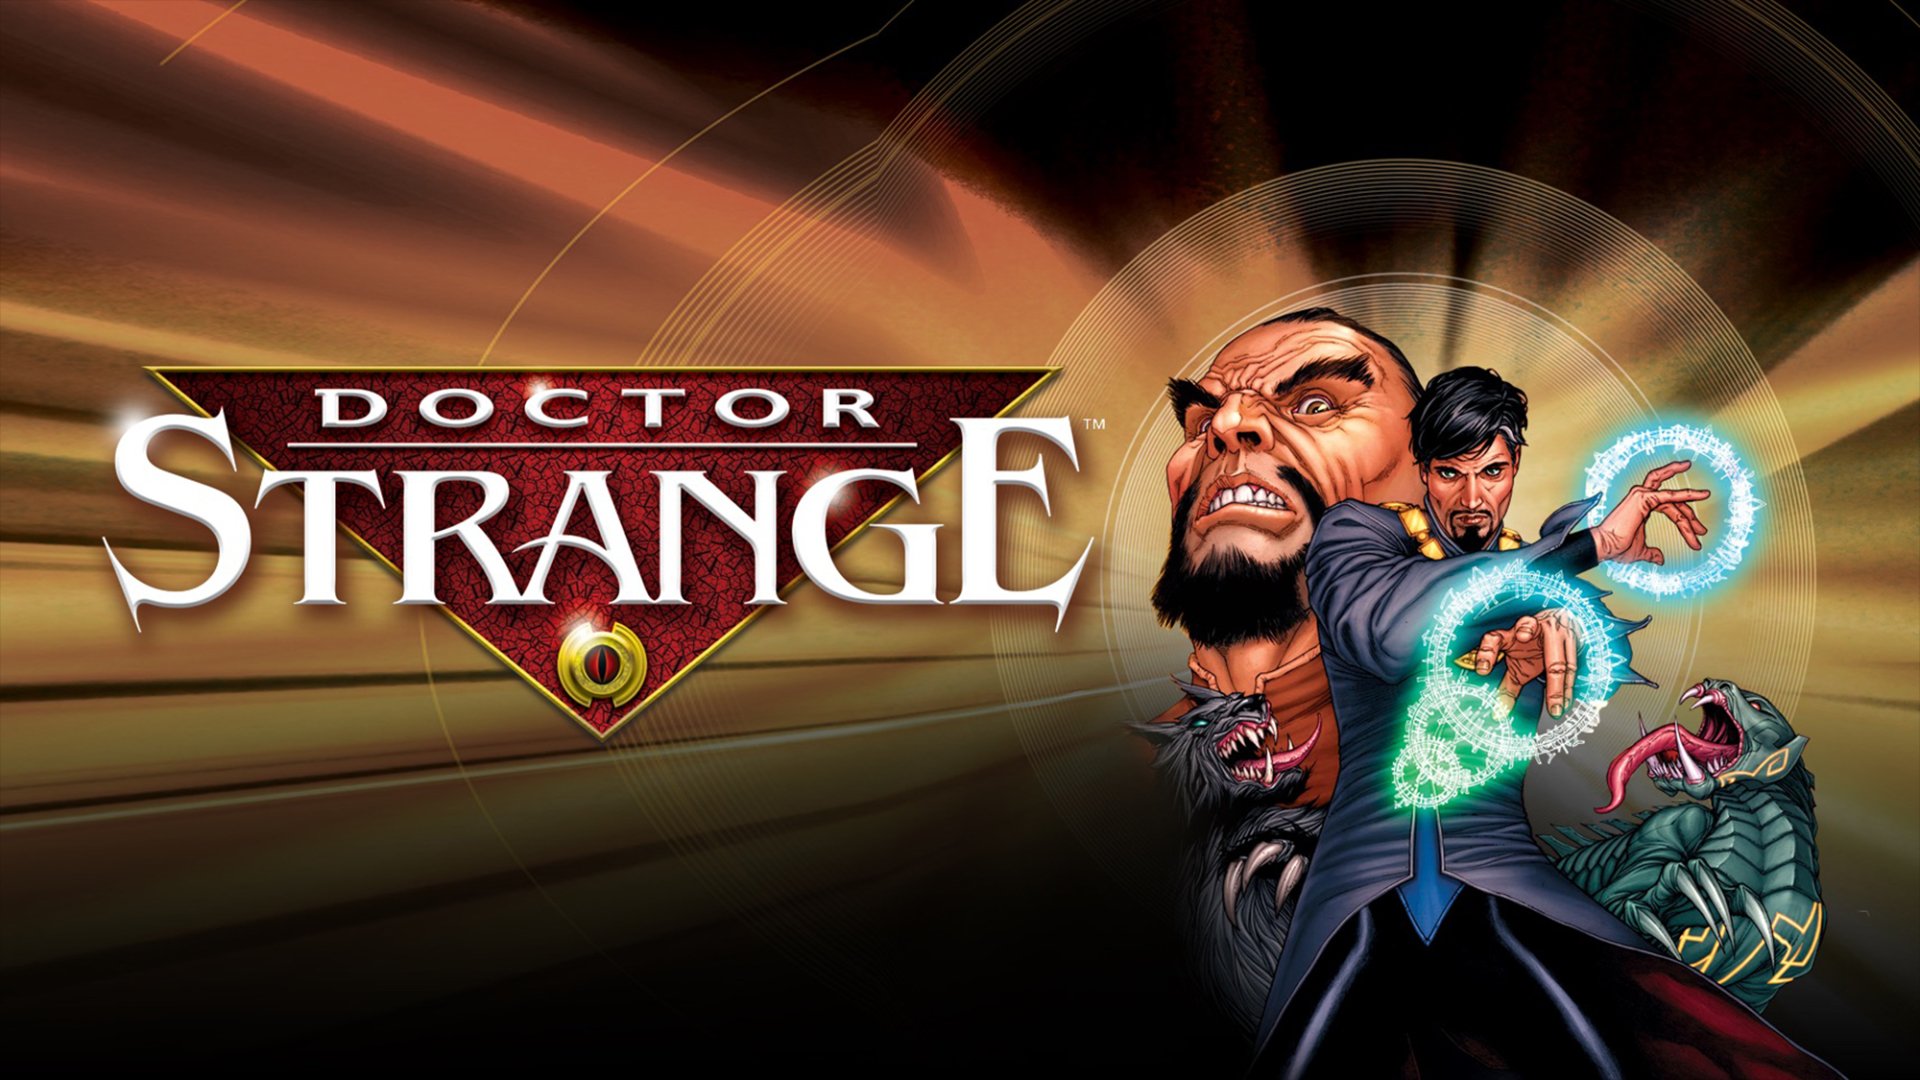 Doctor Strange: The Sorcerer Supreme HD Wallpaper and Background